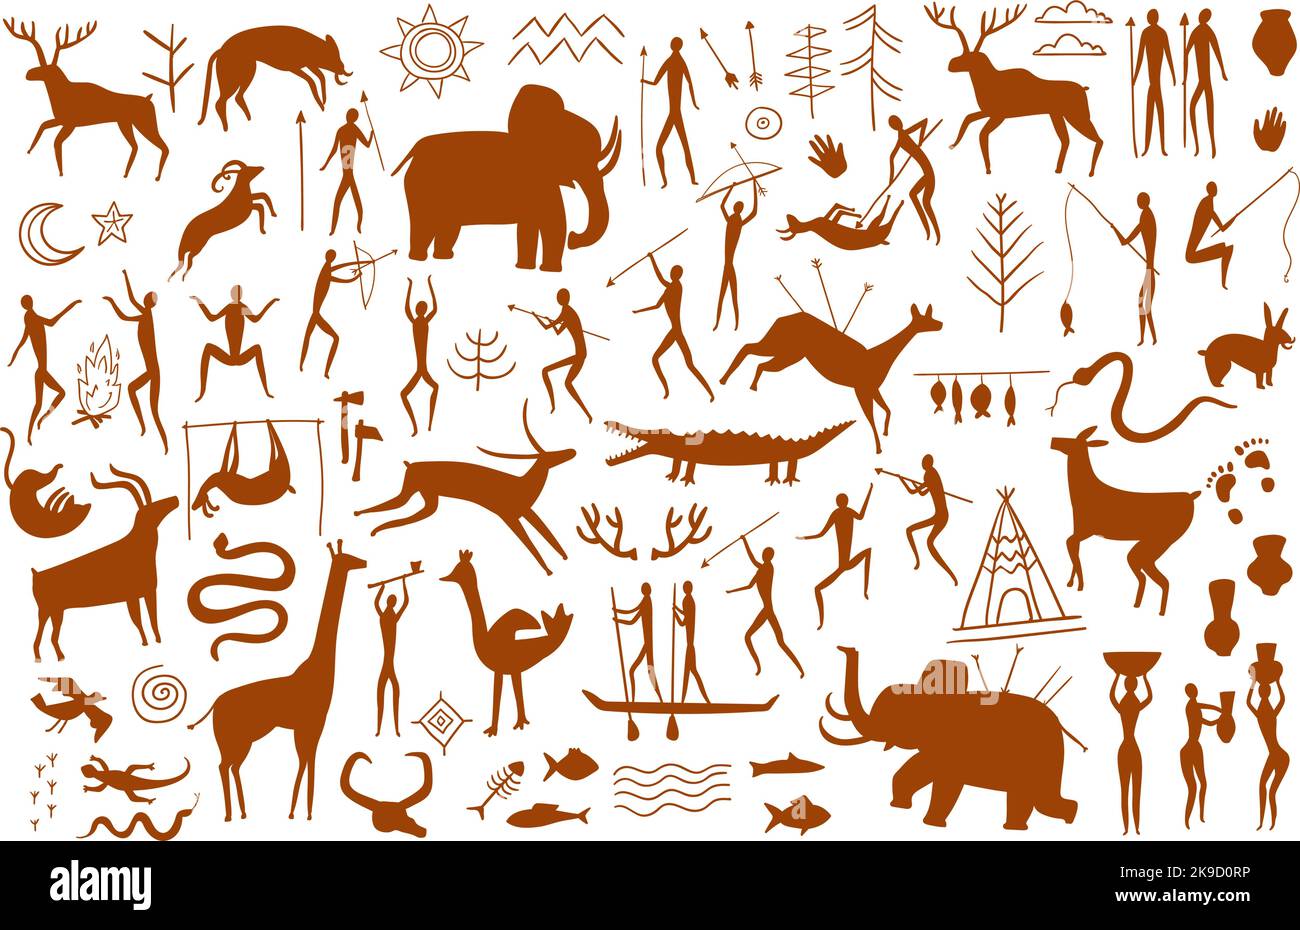 Felsmalerei. Höhlenmensch-Szenen, prähistorische Zeichnungen von Jägerhöhlen und Silhouetten wilder alter Tiere. Kunstvektorsatz aus der Steinzeit Stock Vektor